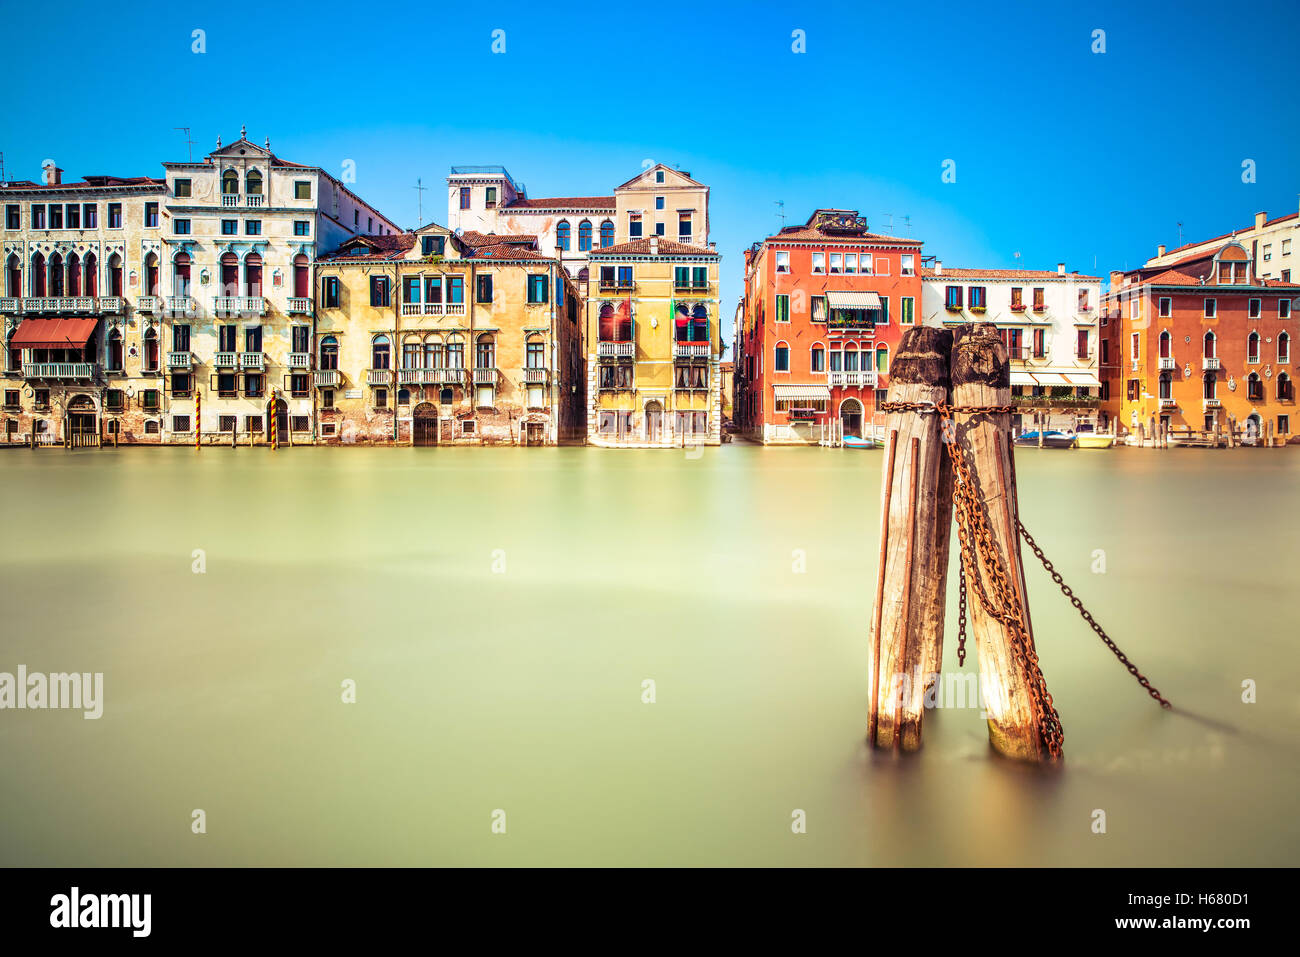 Venedig-Stadtbild, grand Wasserkanal und traditionelle Gebäude-Fassade. Italien, Europa. Langzeitbelichtung Fotografie. Stockfoto